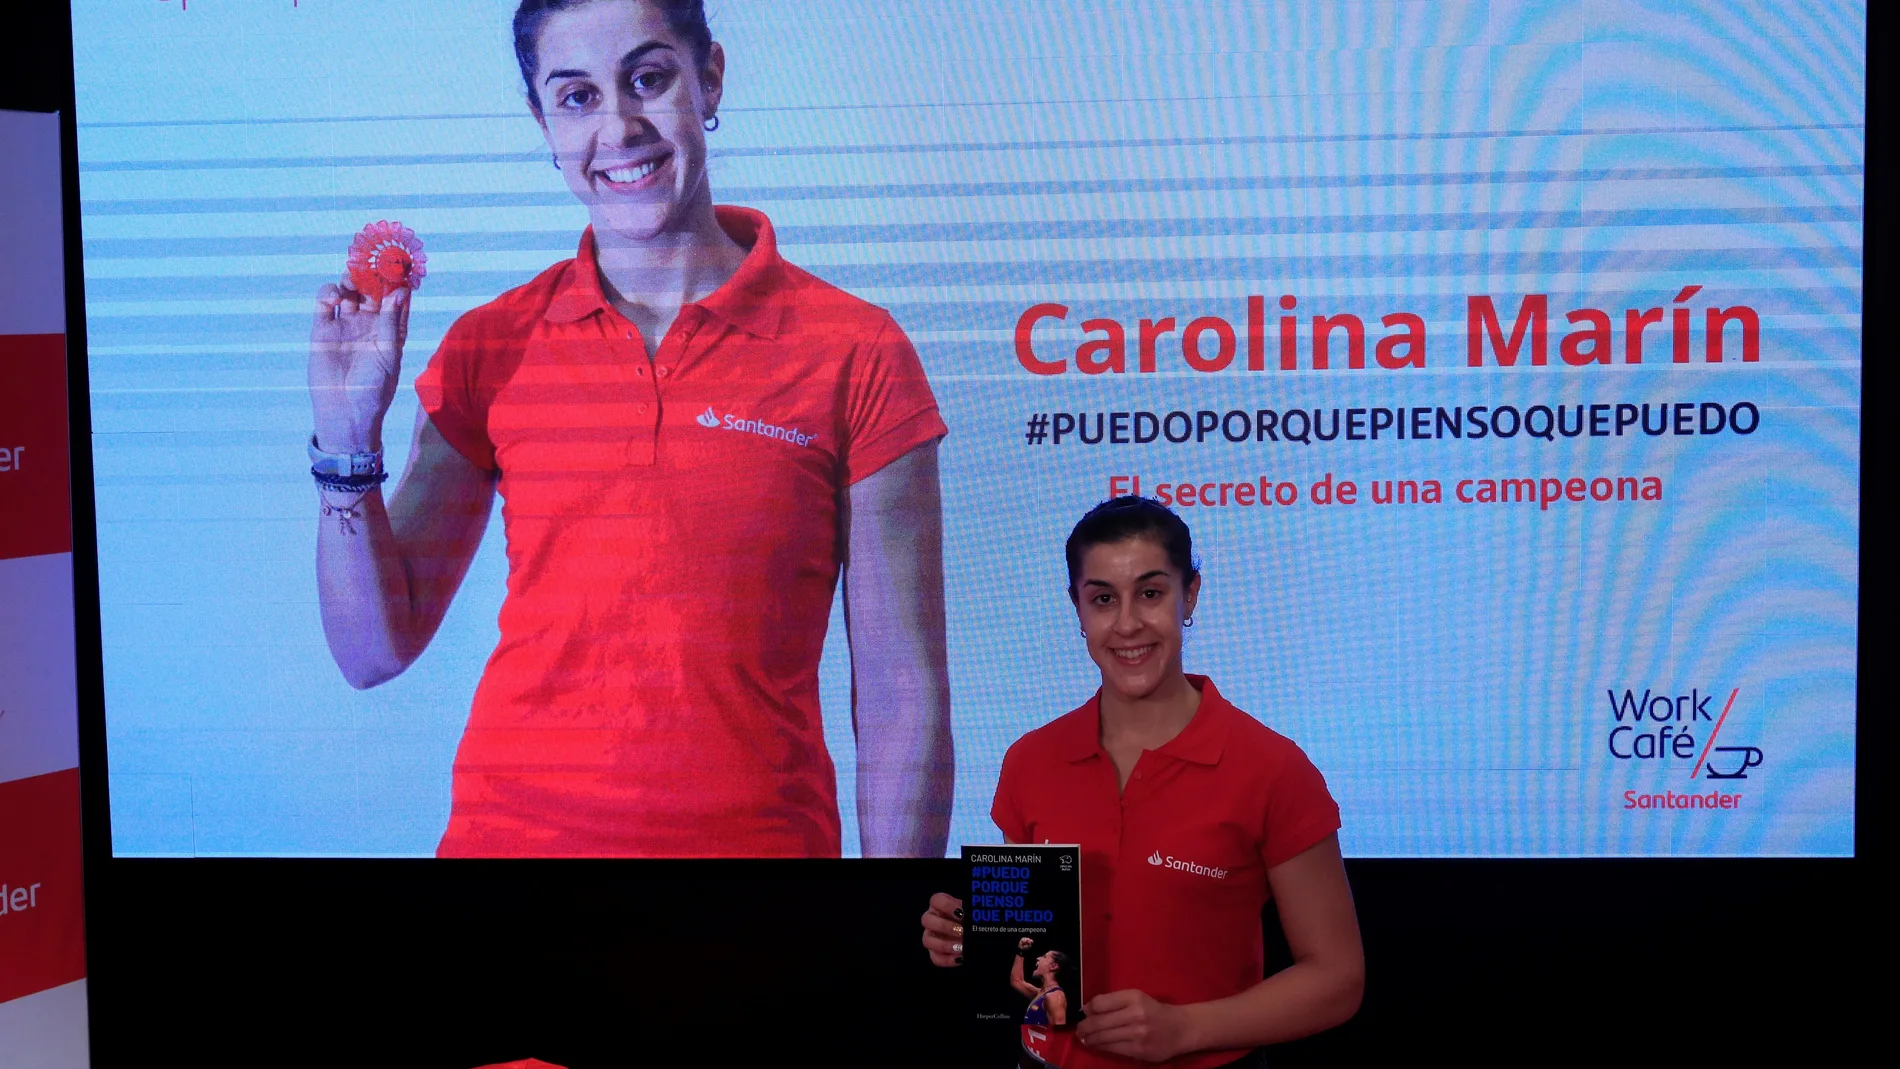 La campeona olímpica de bádminton Carolina Marín presentó su libro "Puedo porque pienso que puedo"